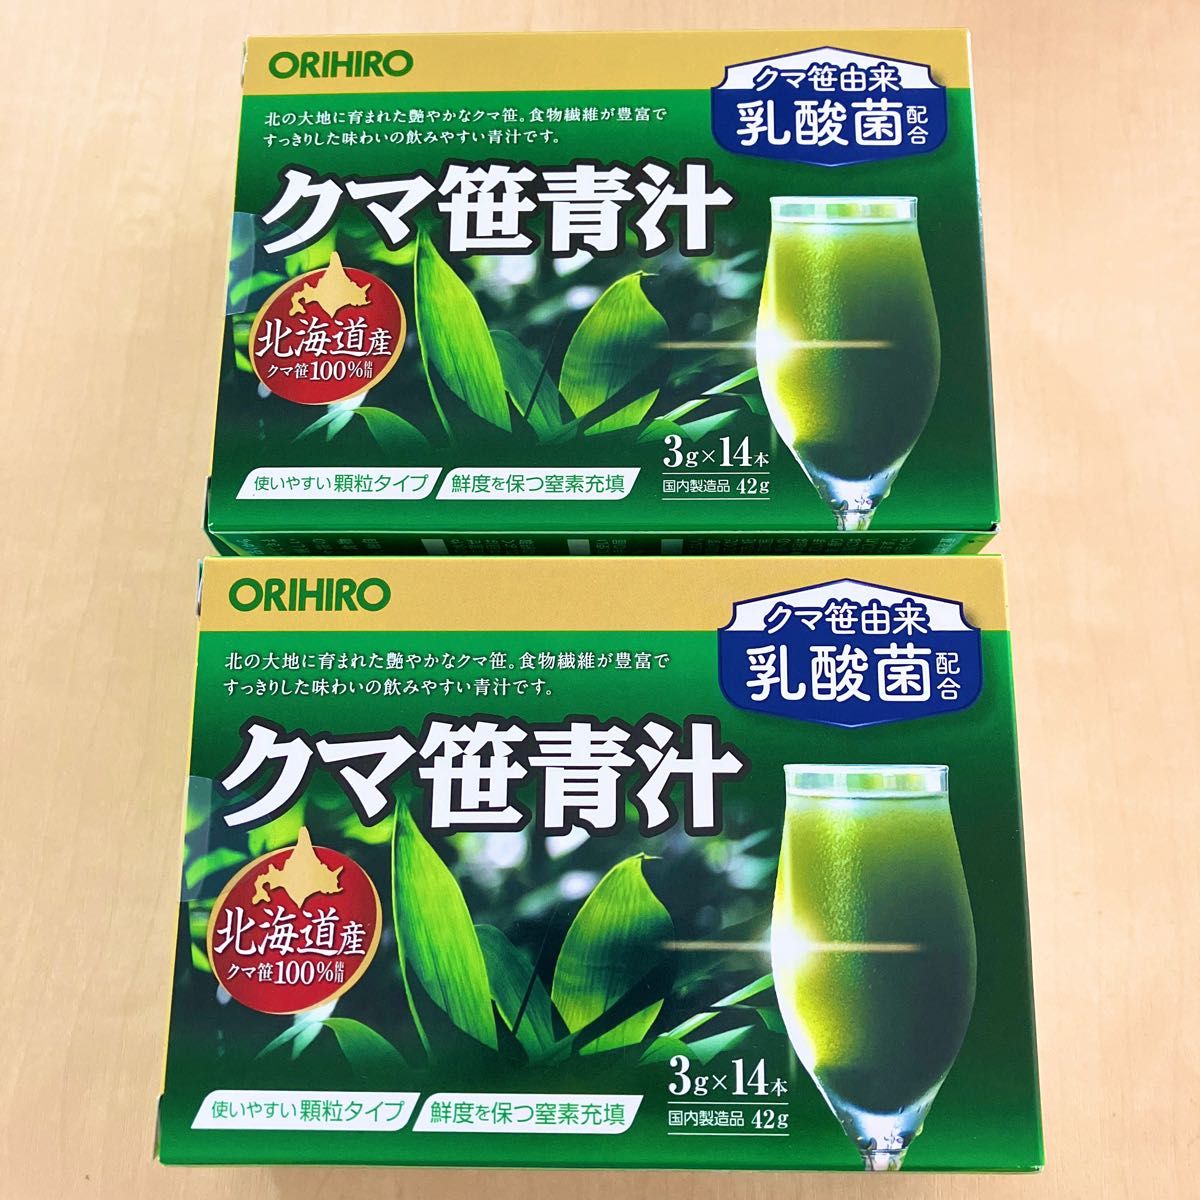 オリヒロプランデュ クマ笹青汁 北海道産クマ笹100% 3g×14包 2箱